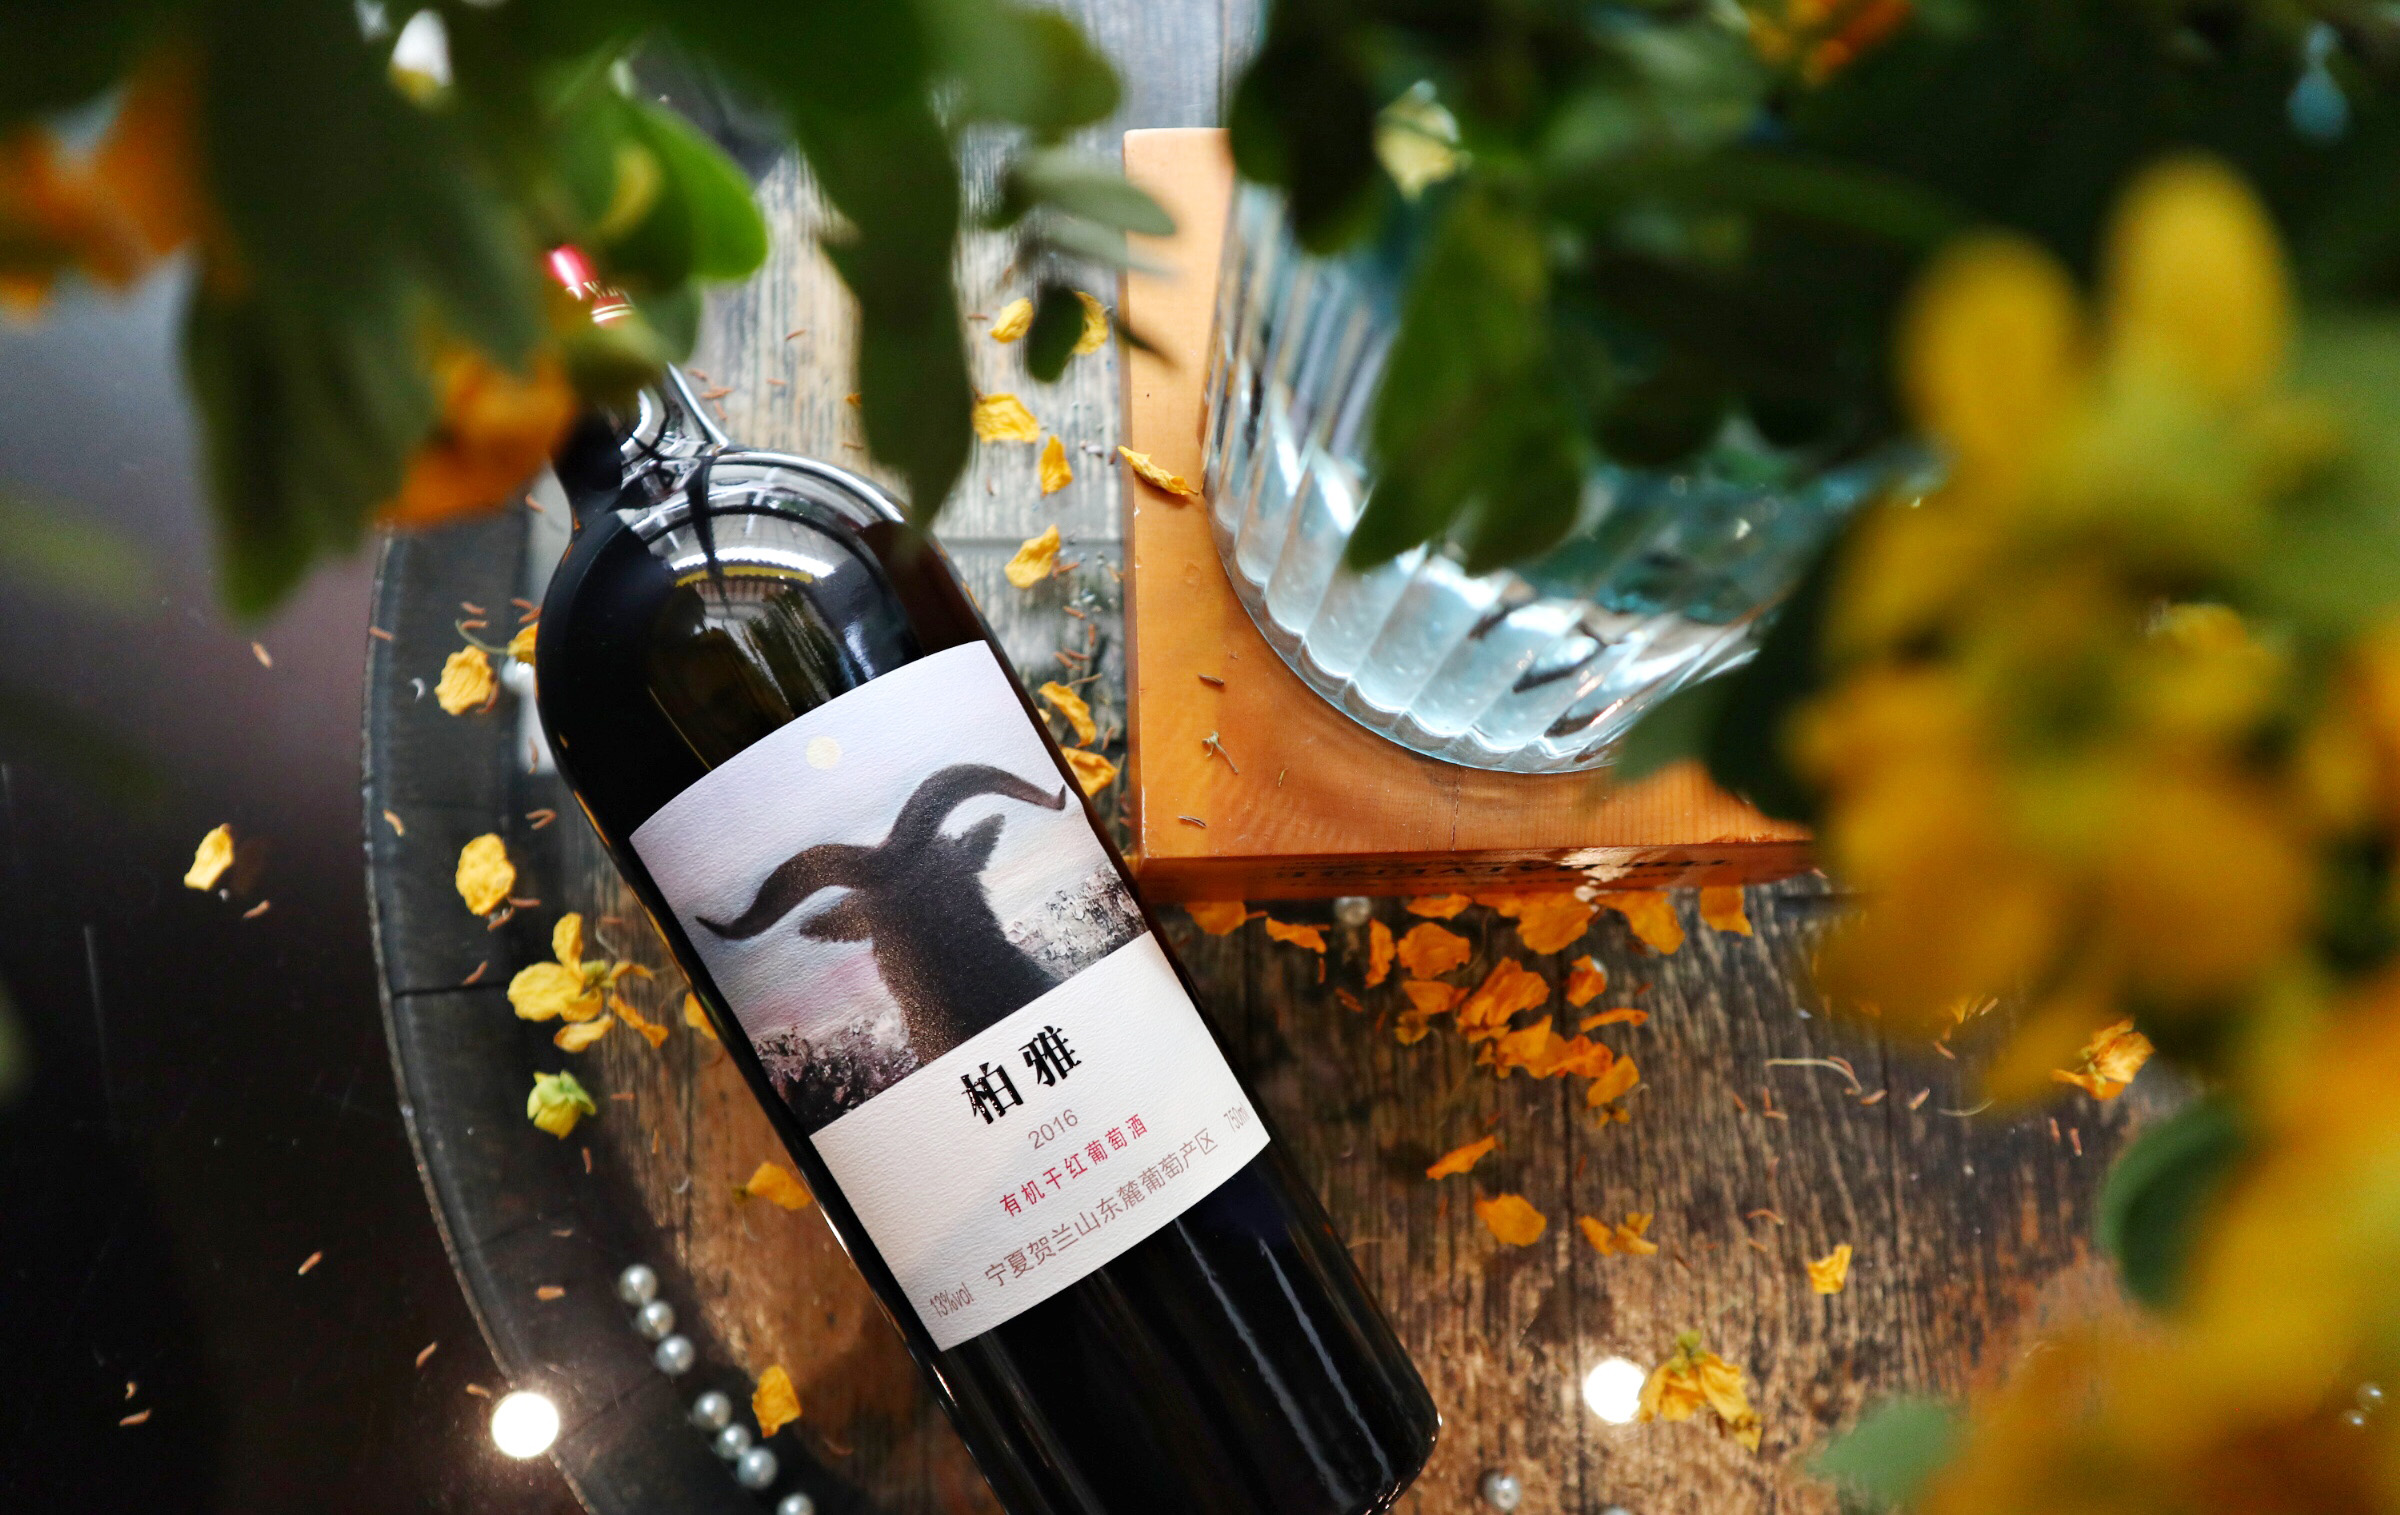 宁夏葡萄酒庄+建发酒业供应链+柏雅品牌 创新模式打造中国葡萄酒大品牌